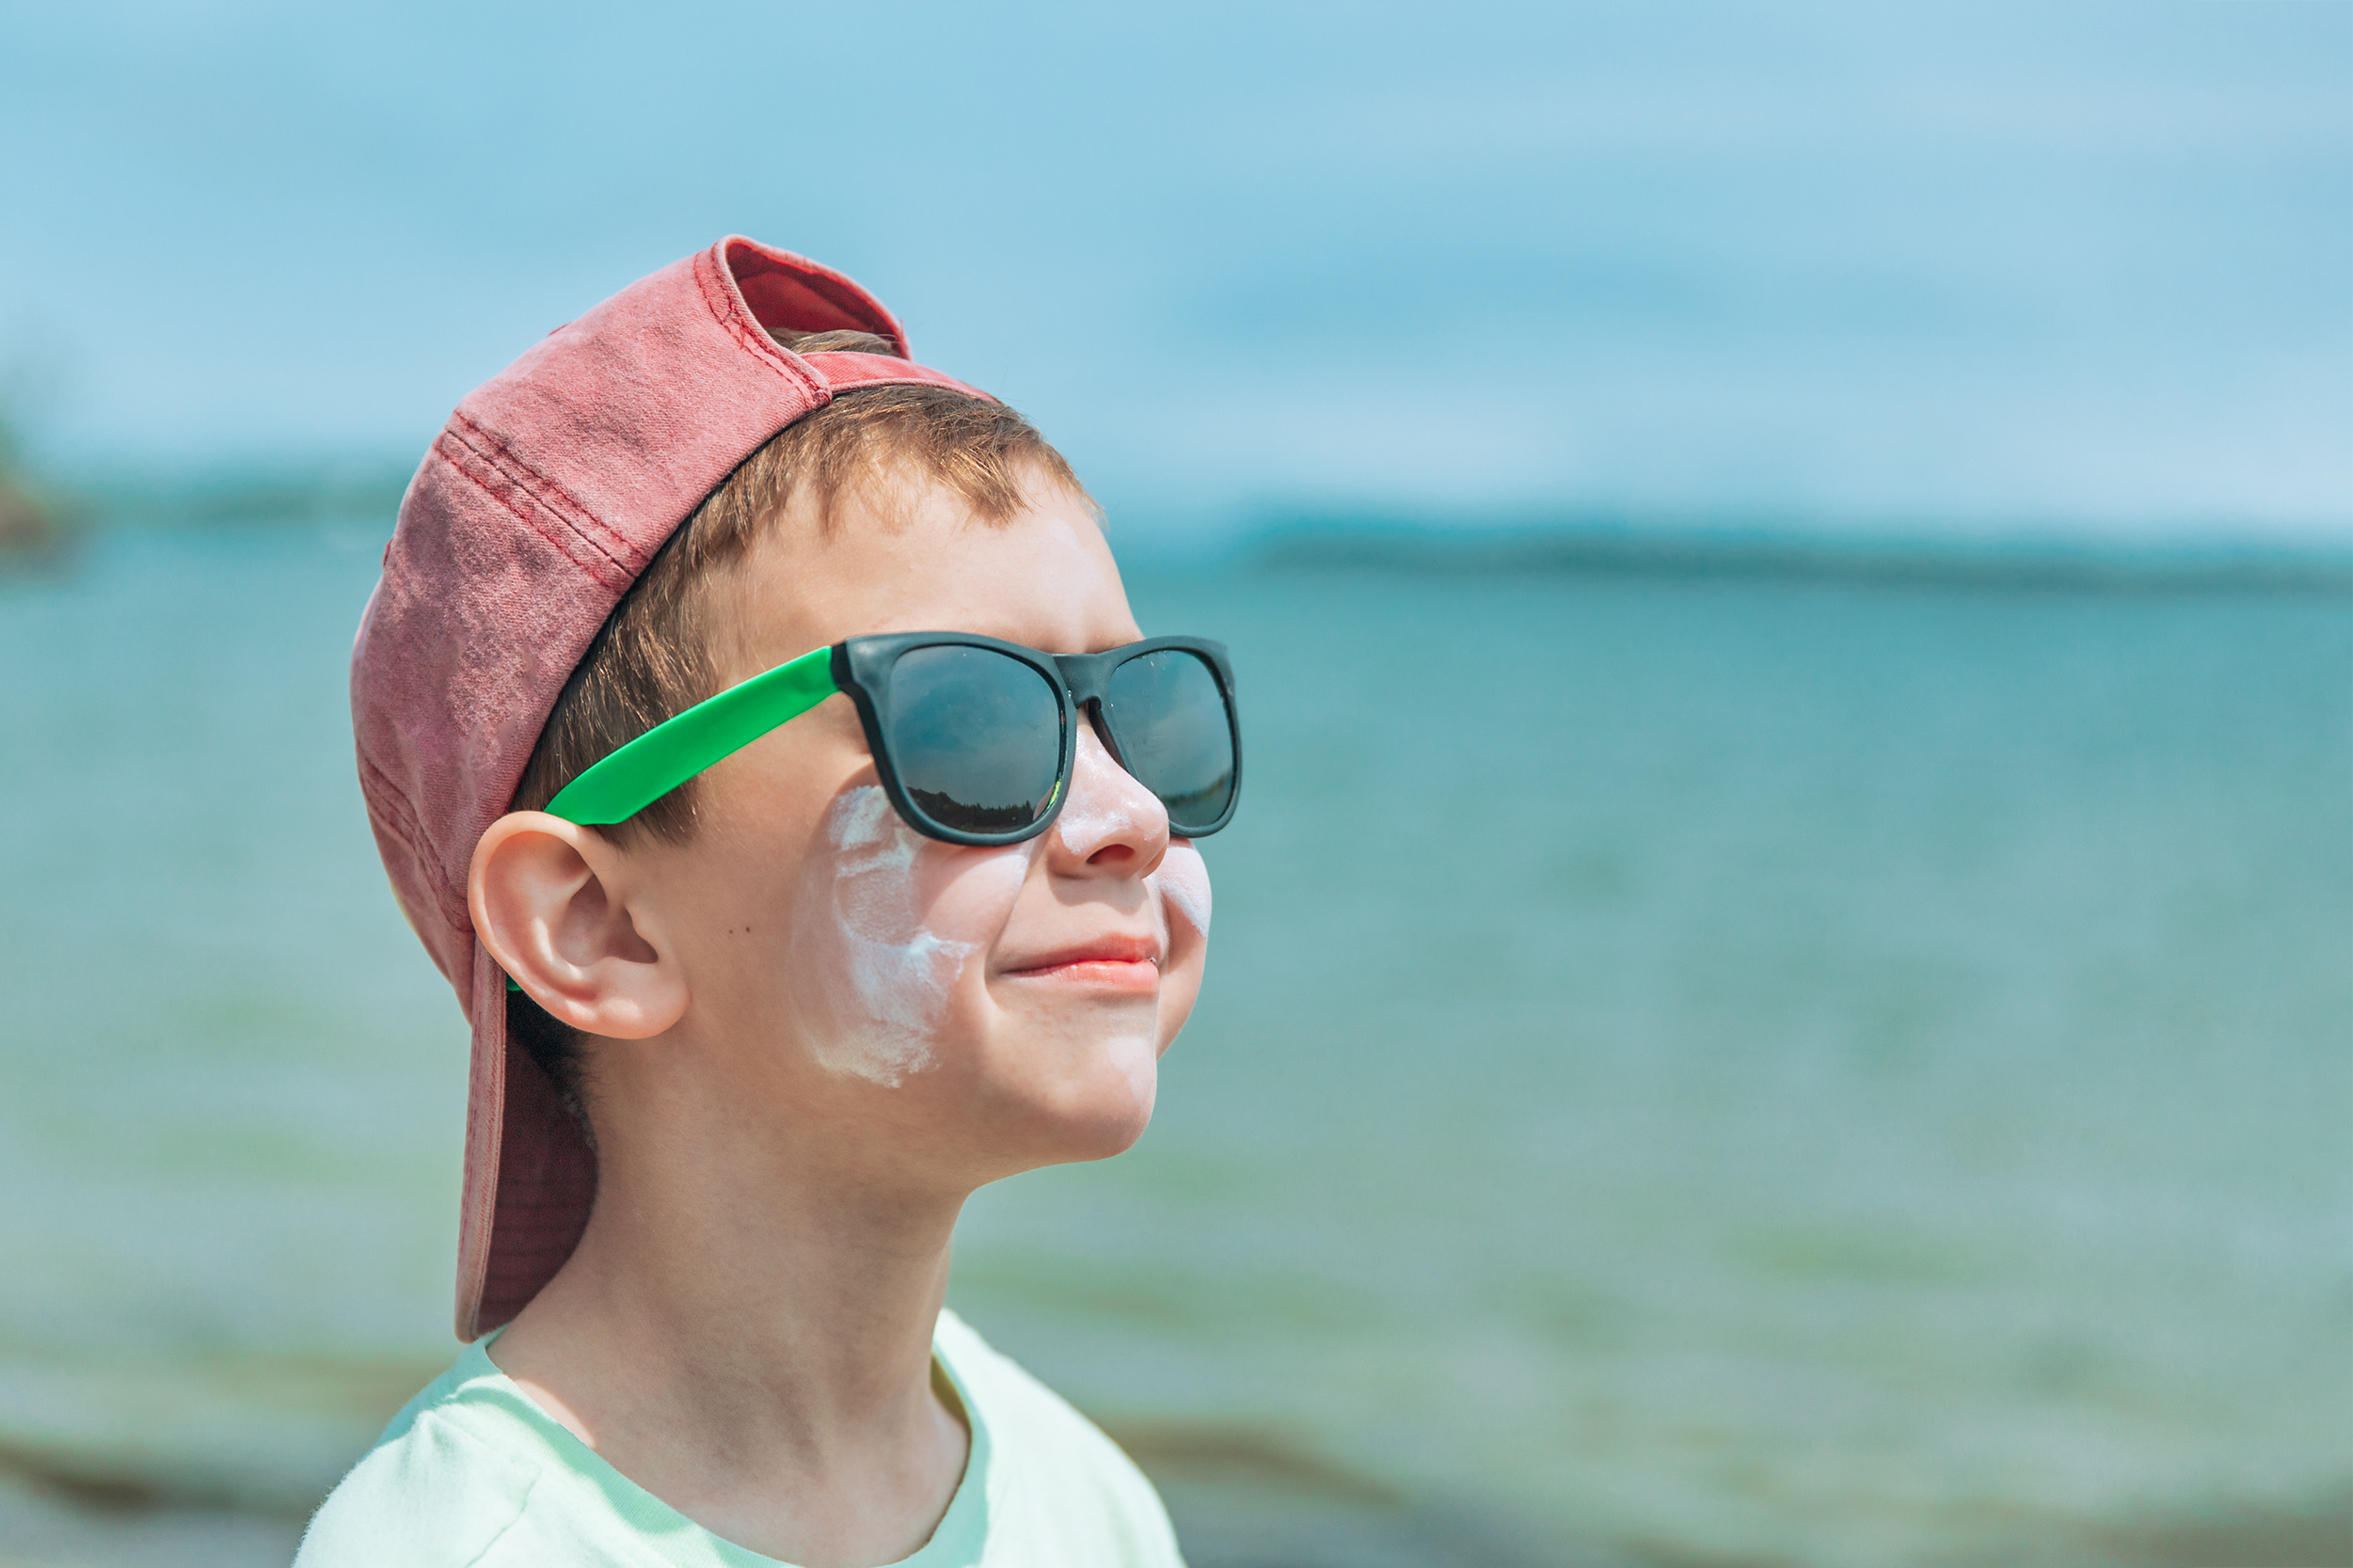 Por qué son importantes las gafas de sol para niños? - Blog a